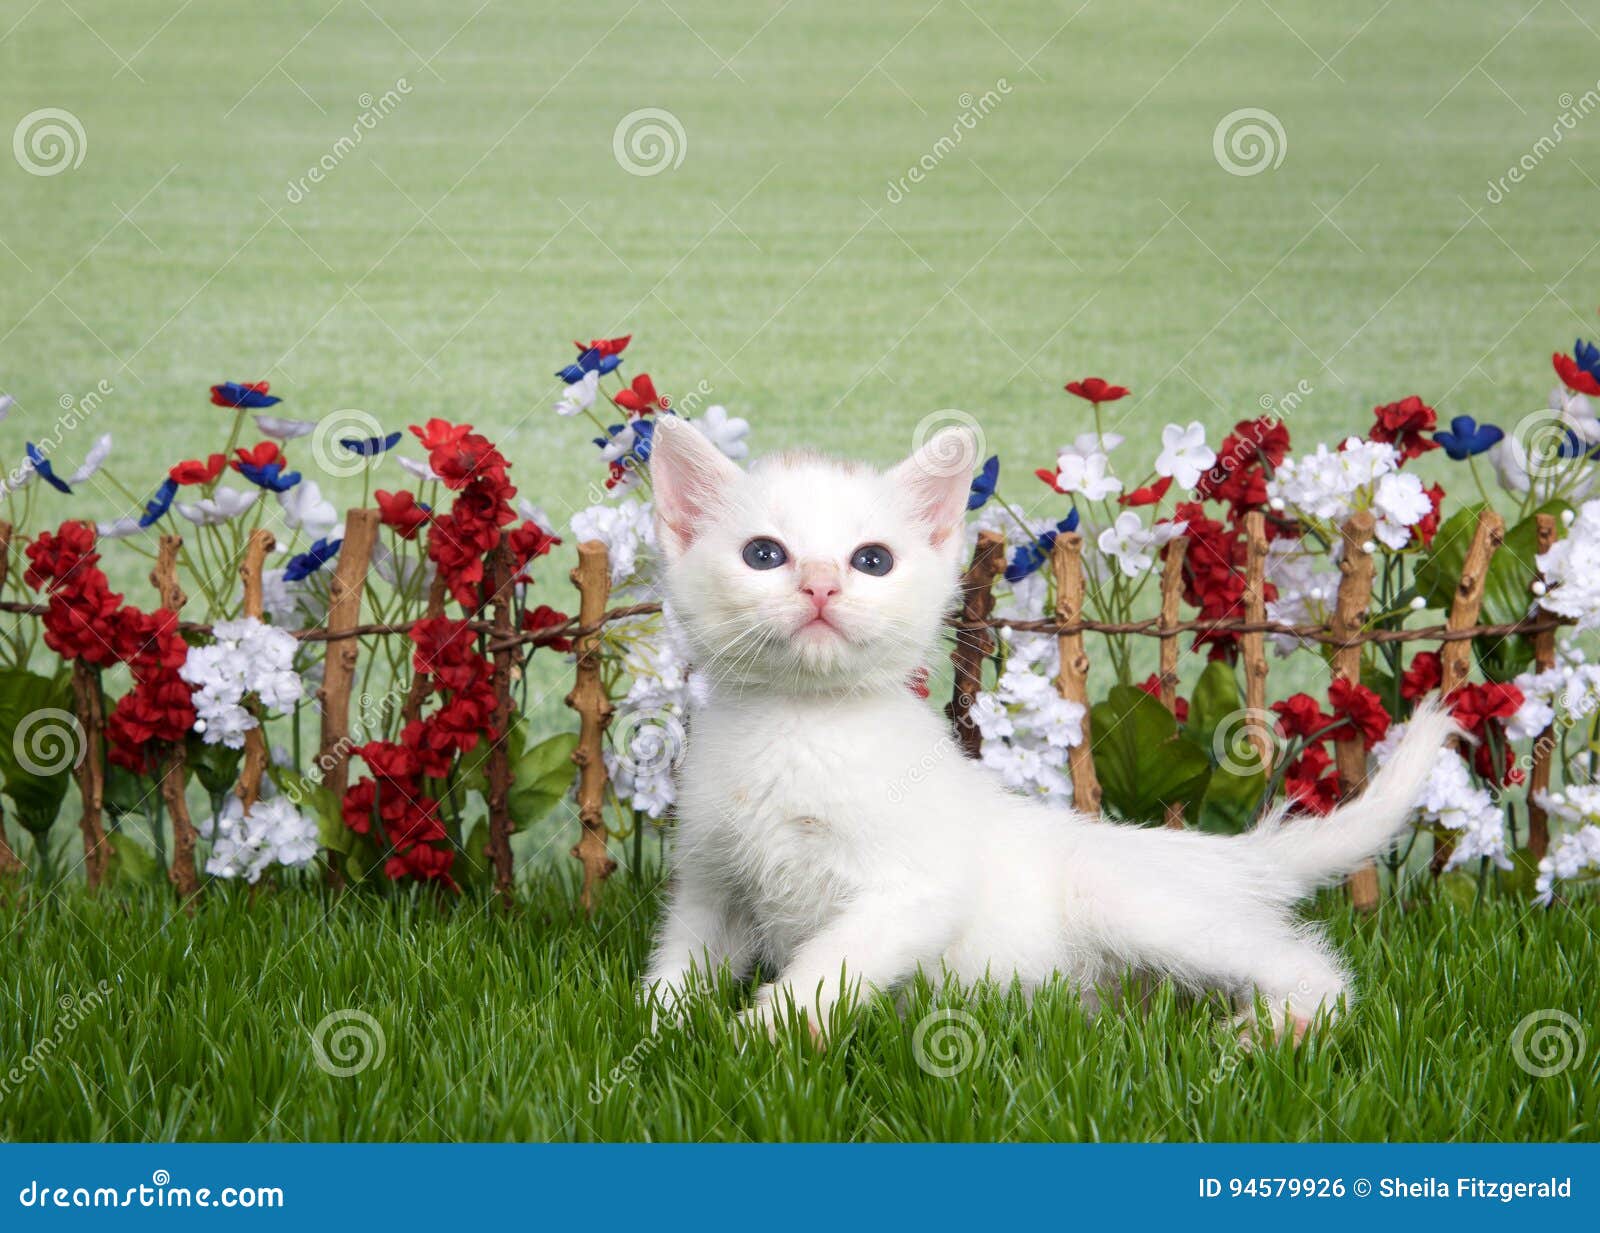 white kitten in a flower garden stock photo - image of kitty, studio